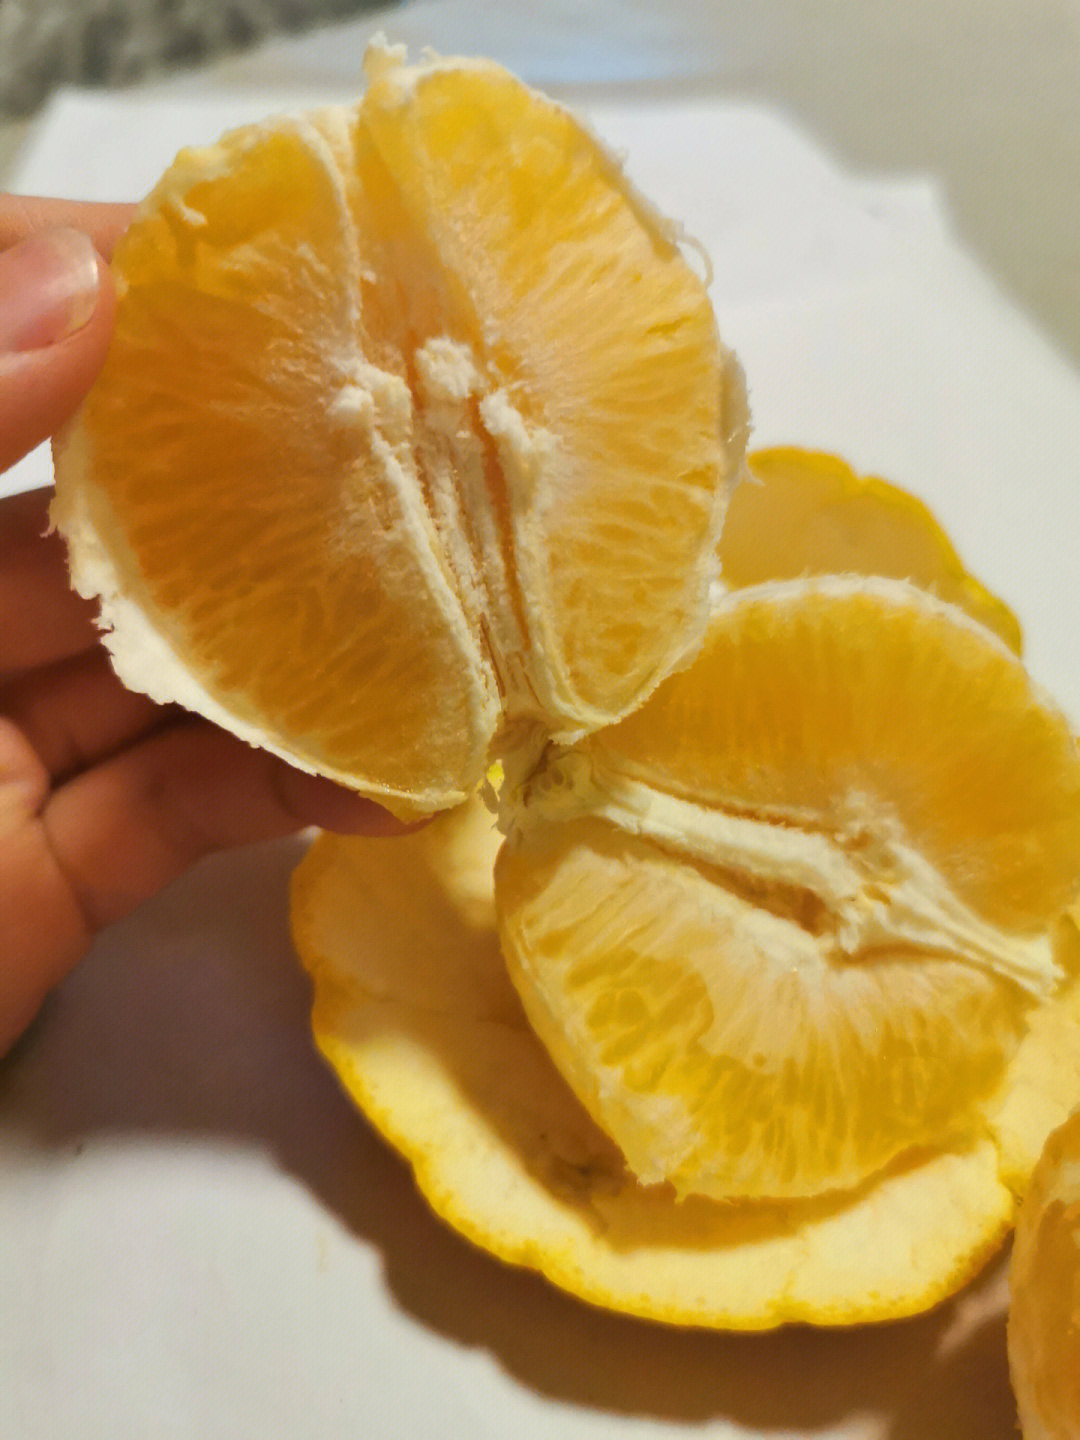 橙子打甜蜜素过程图片